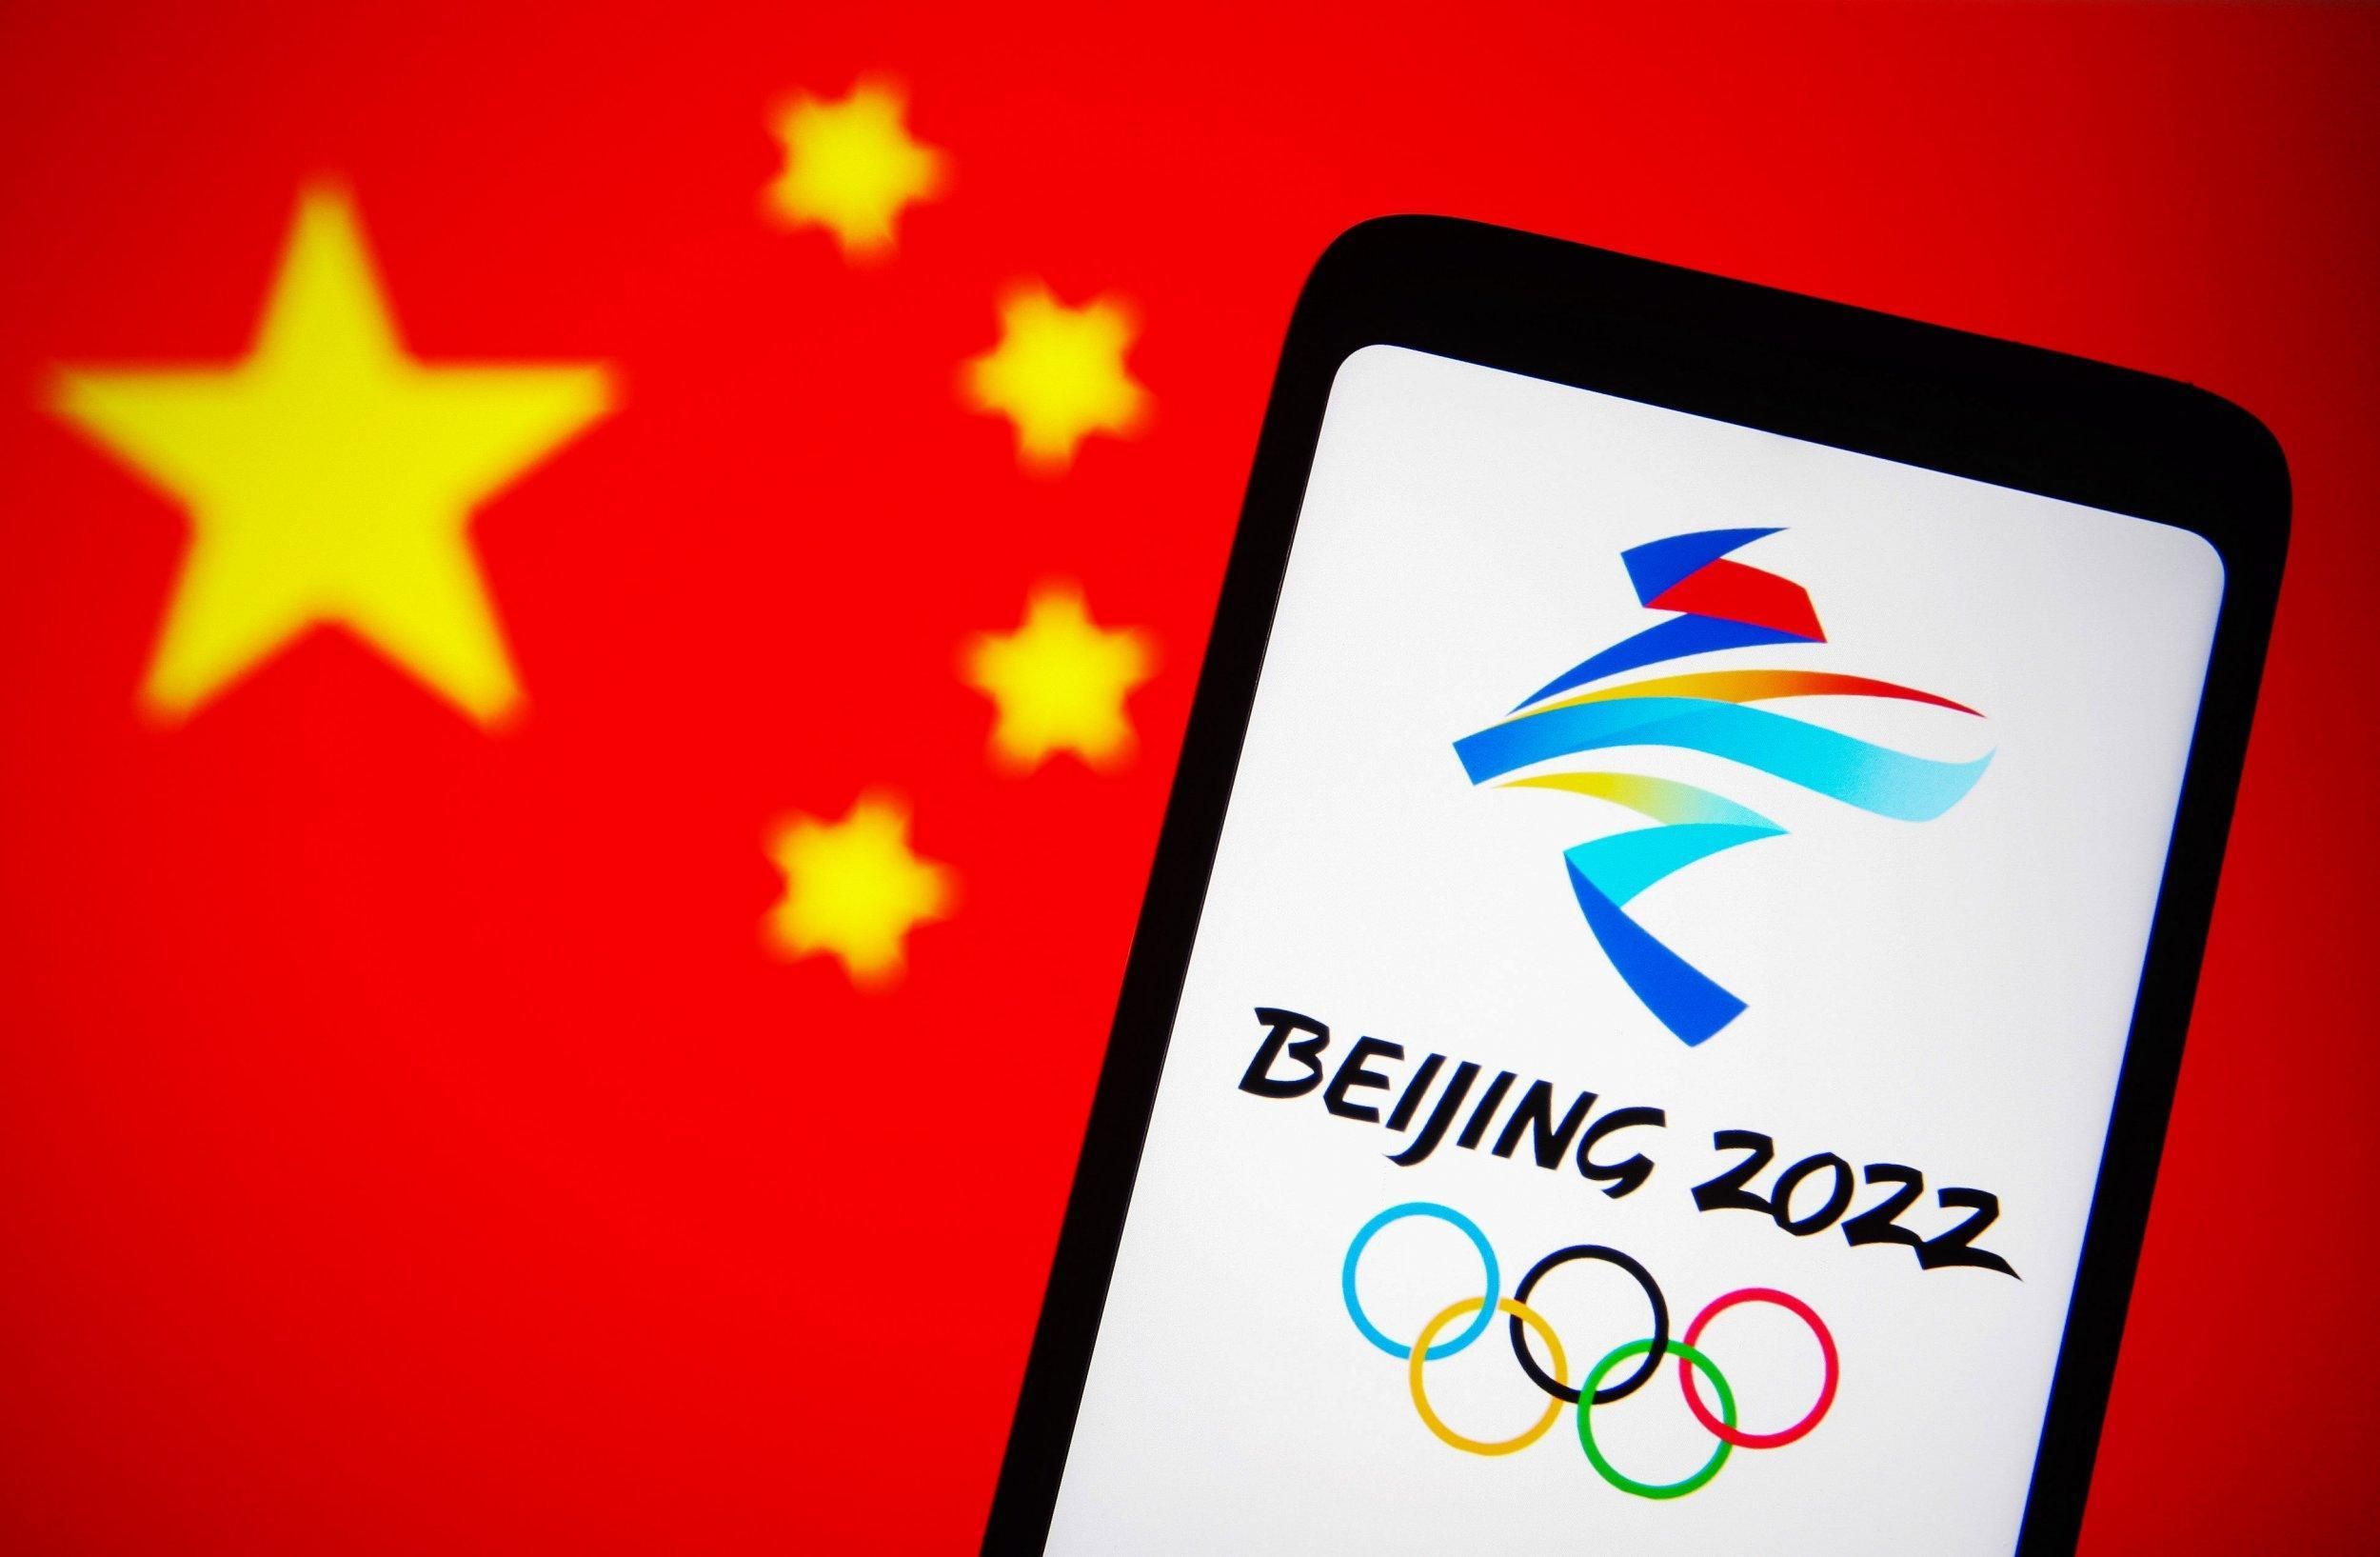 Збірна Тайваню бойкотуватиме церемонії Олімпіади-2022 через конфлікт з Китаєм - Спорт 24